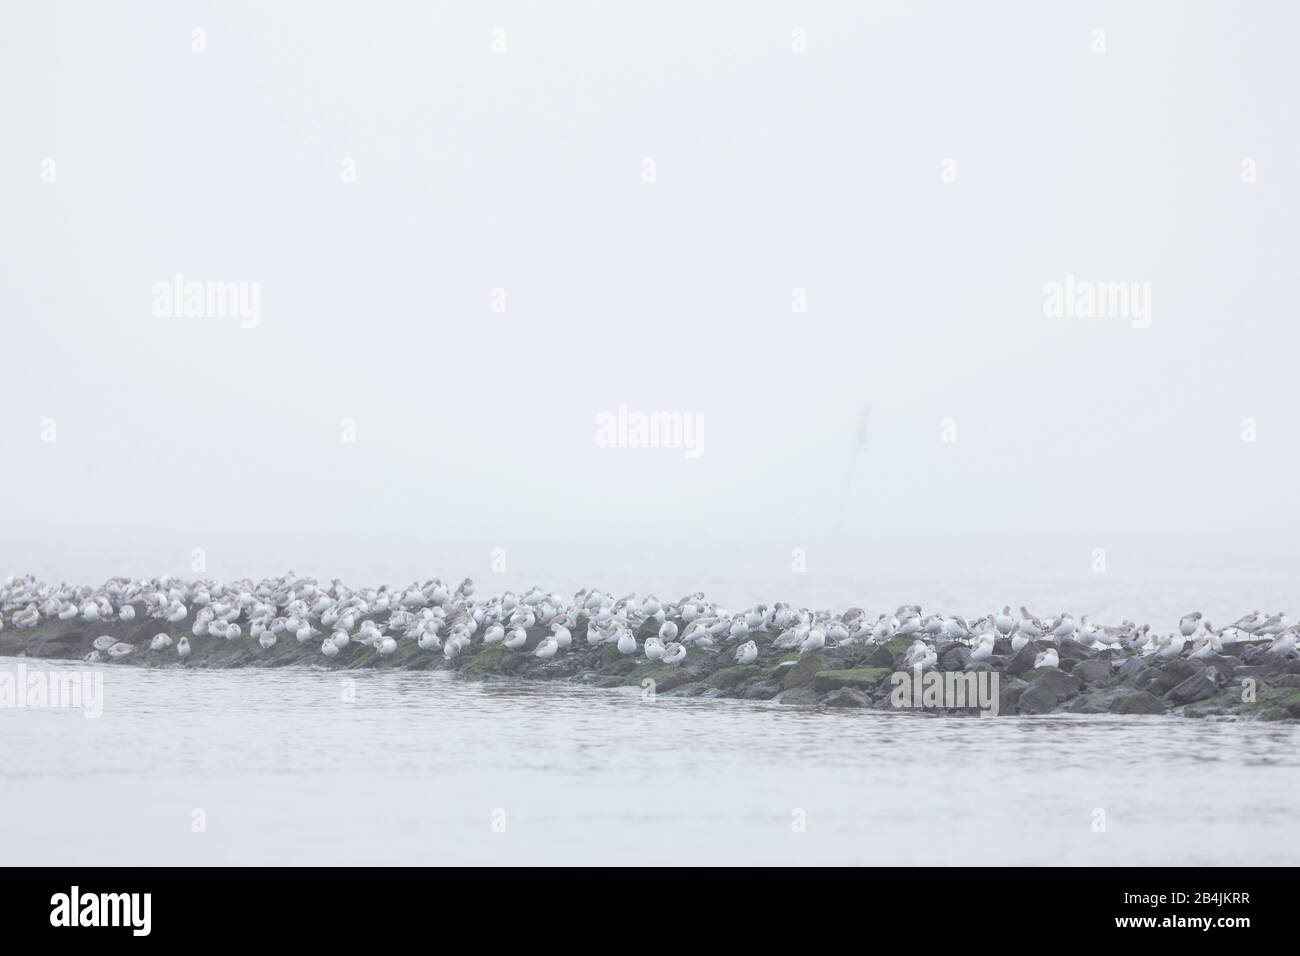 Europa, Deutschland, Niedersachsen, Otterndorf. Ein Schwarm überwinternder Sanderlinge (Calidris alba) sitzt ruhend und schlafend auf einer Bune. Dahi Stock Photo